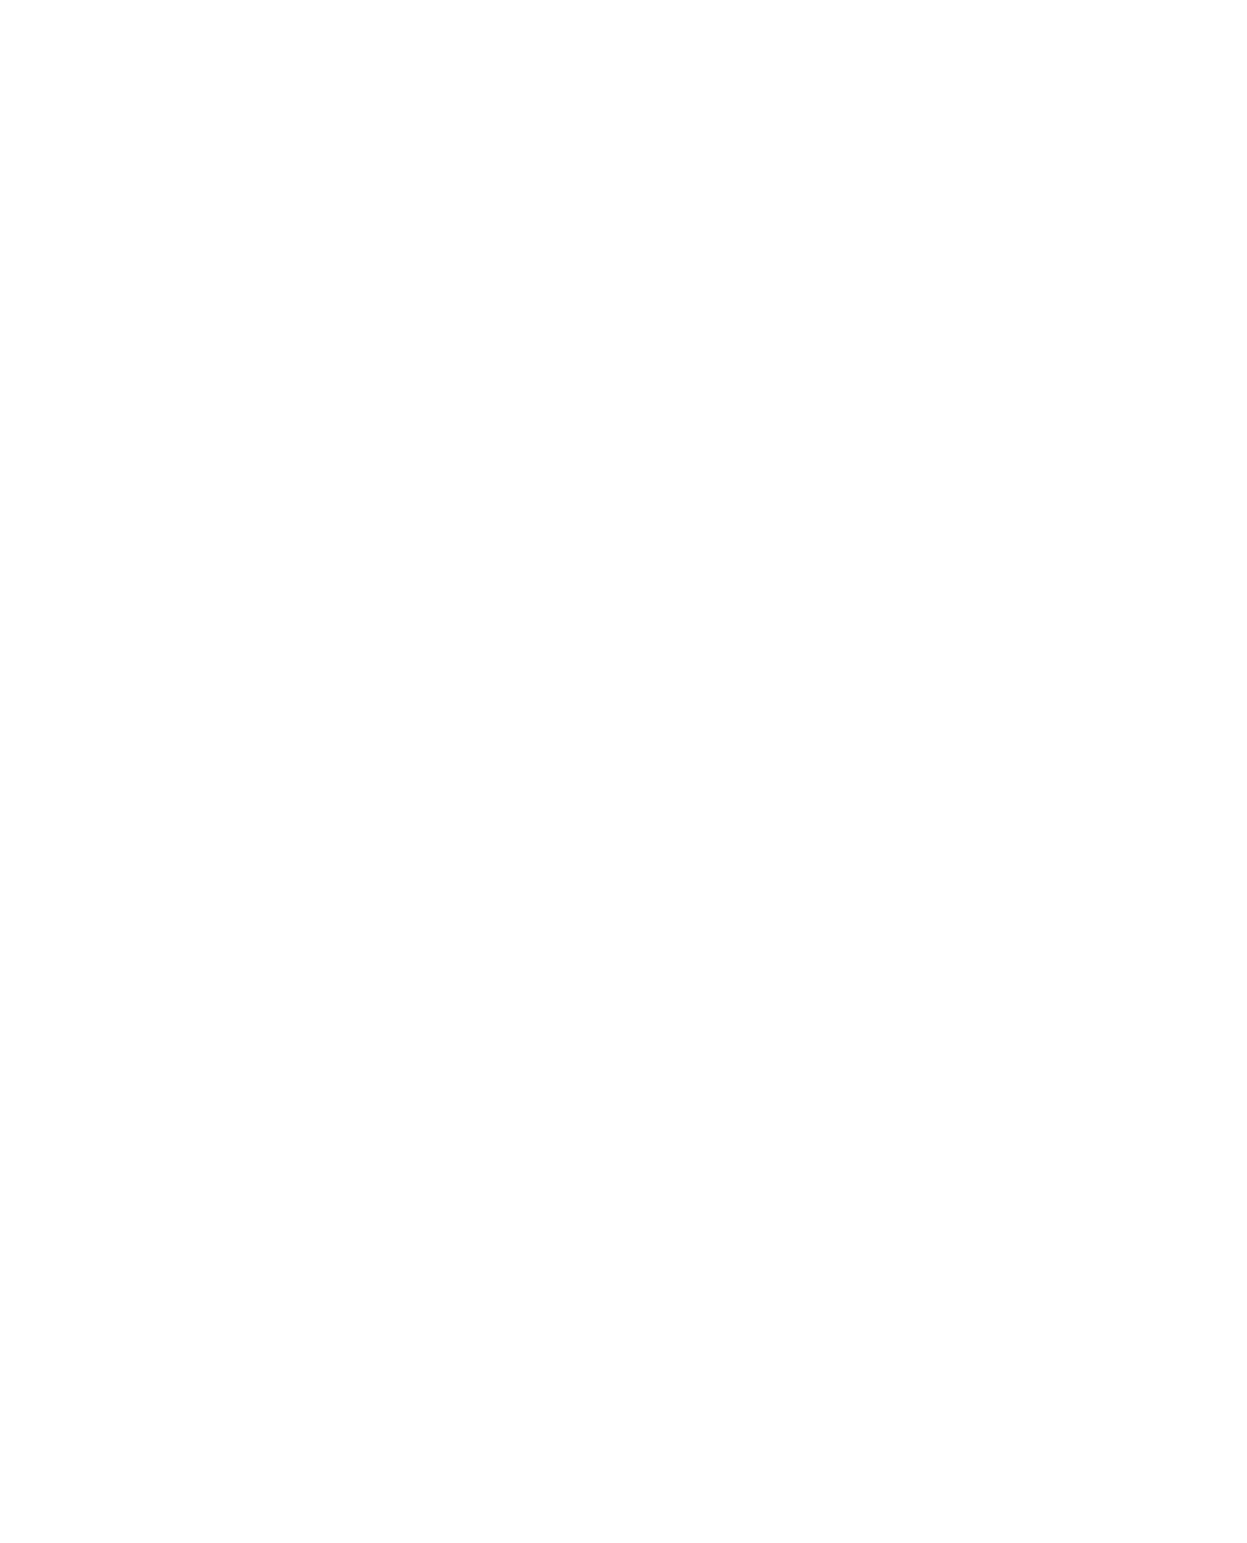 SSE logo for dark backgrounds (transparent PNG)